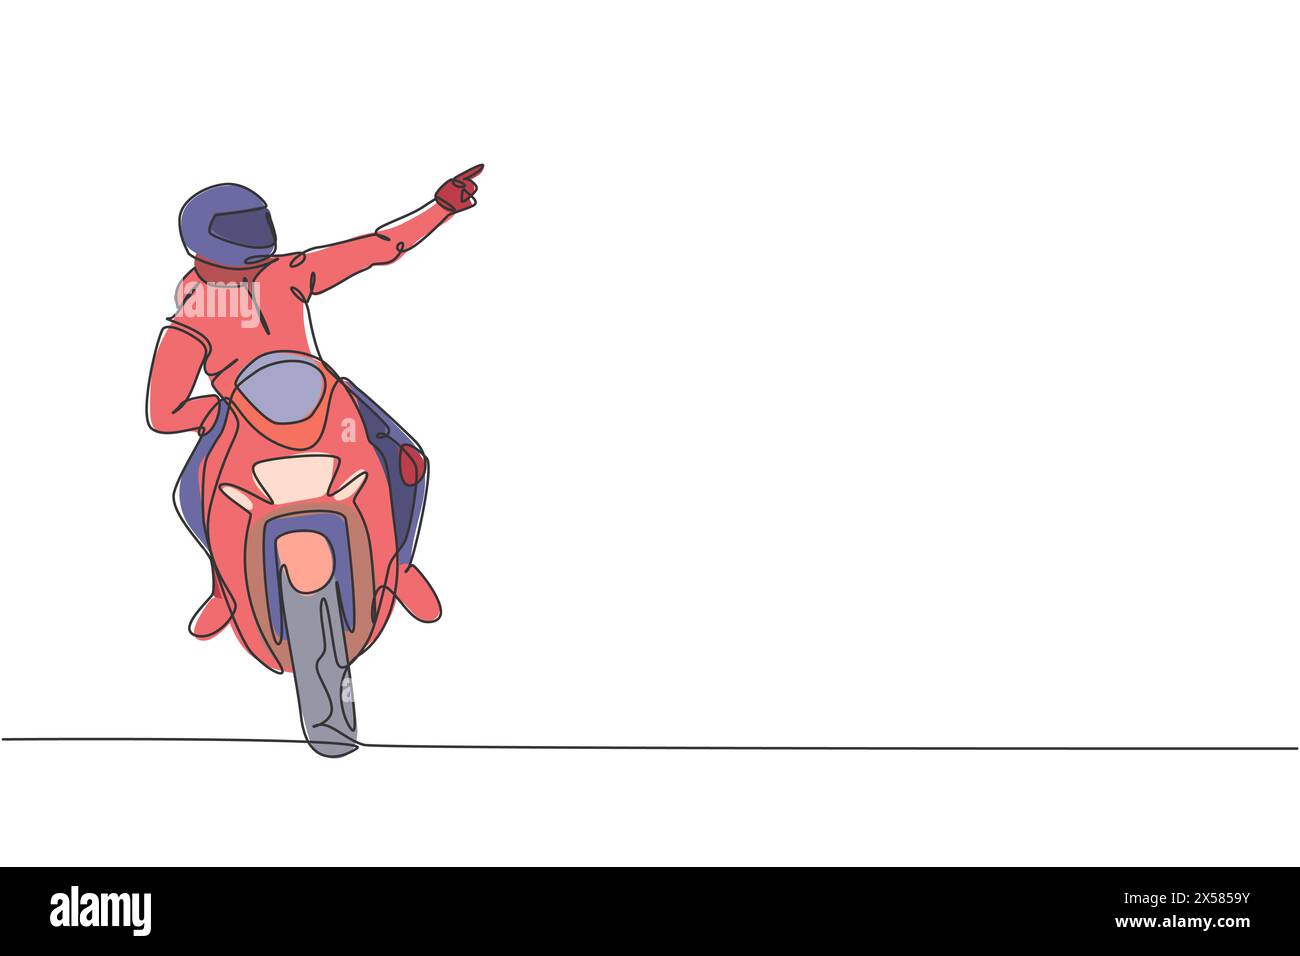 Einzelne durchgehende Linienzeichnung eines jungen Superbike-Rennfahrers, der mit dem Finger auf die Zuschauer zeigt. Moto-Turnierkonzept. Trendige einzeilige Zeichnung Design Vektor Stock Vektor